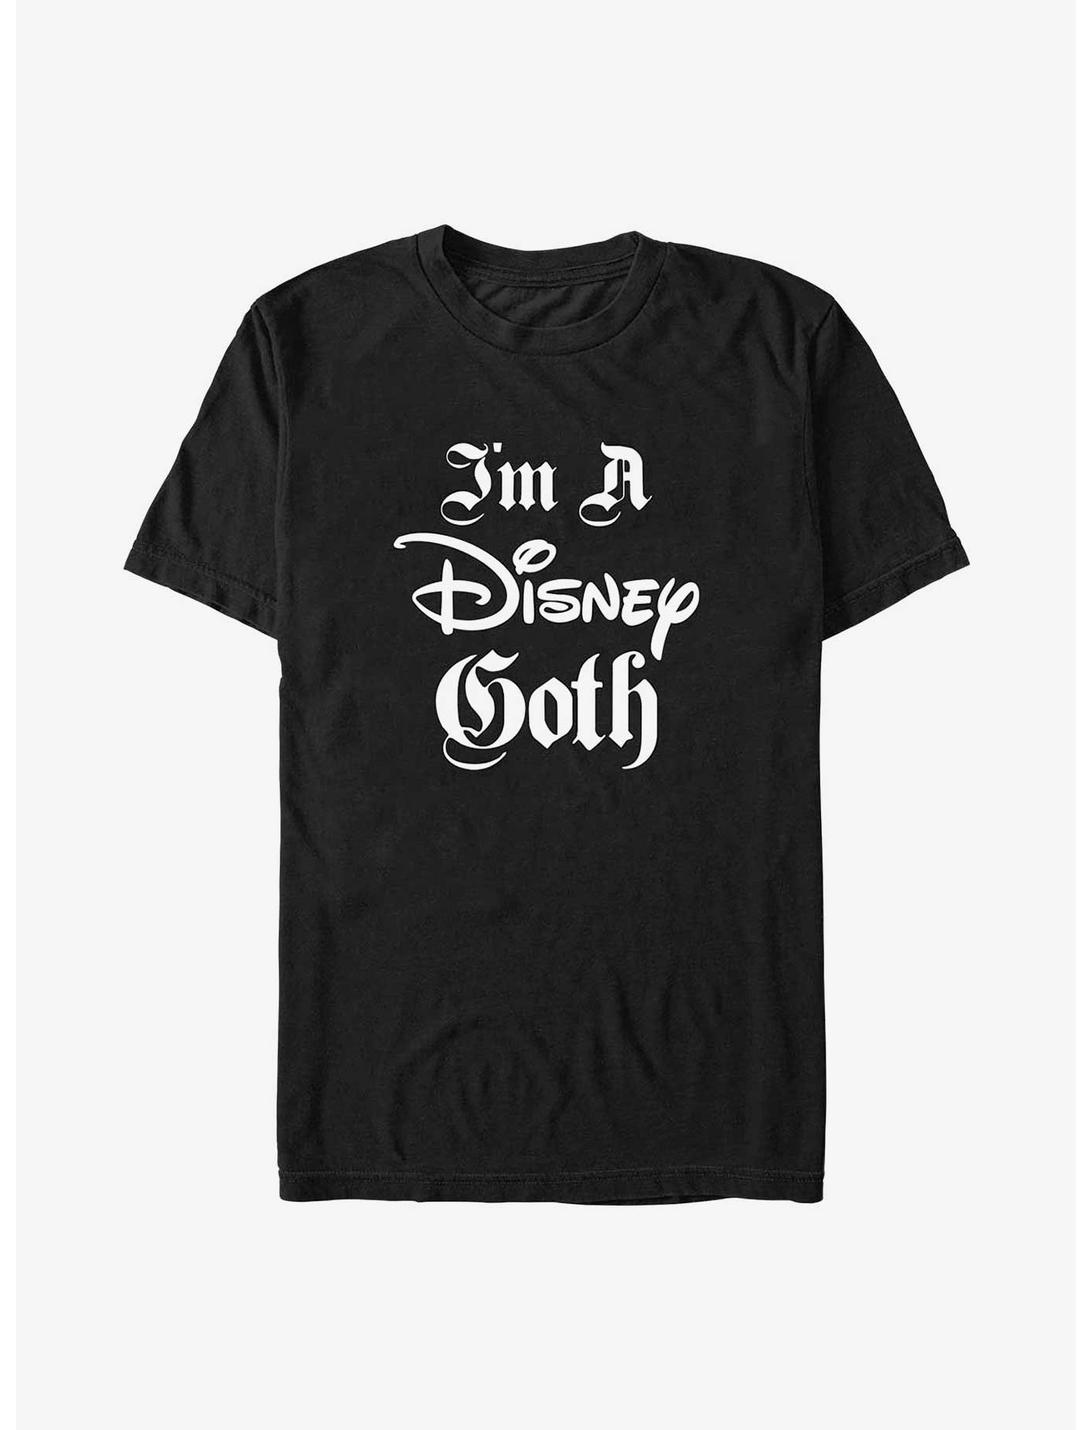 Disney Channel Disney Goth T-Shirt, BLACK, hi-res